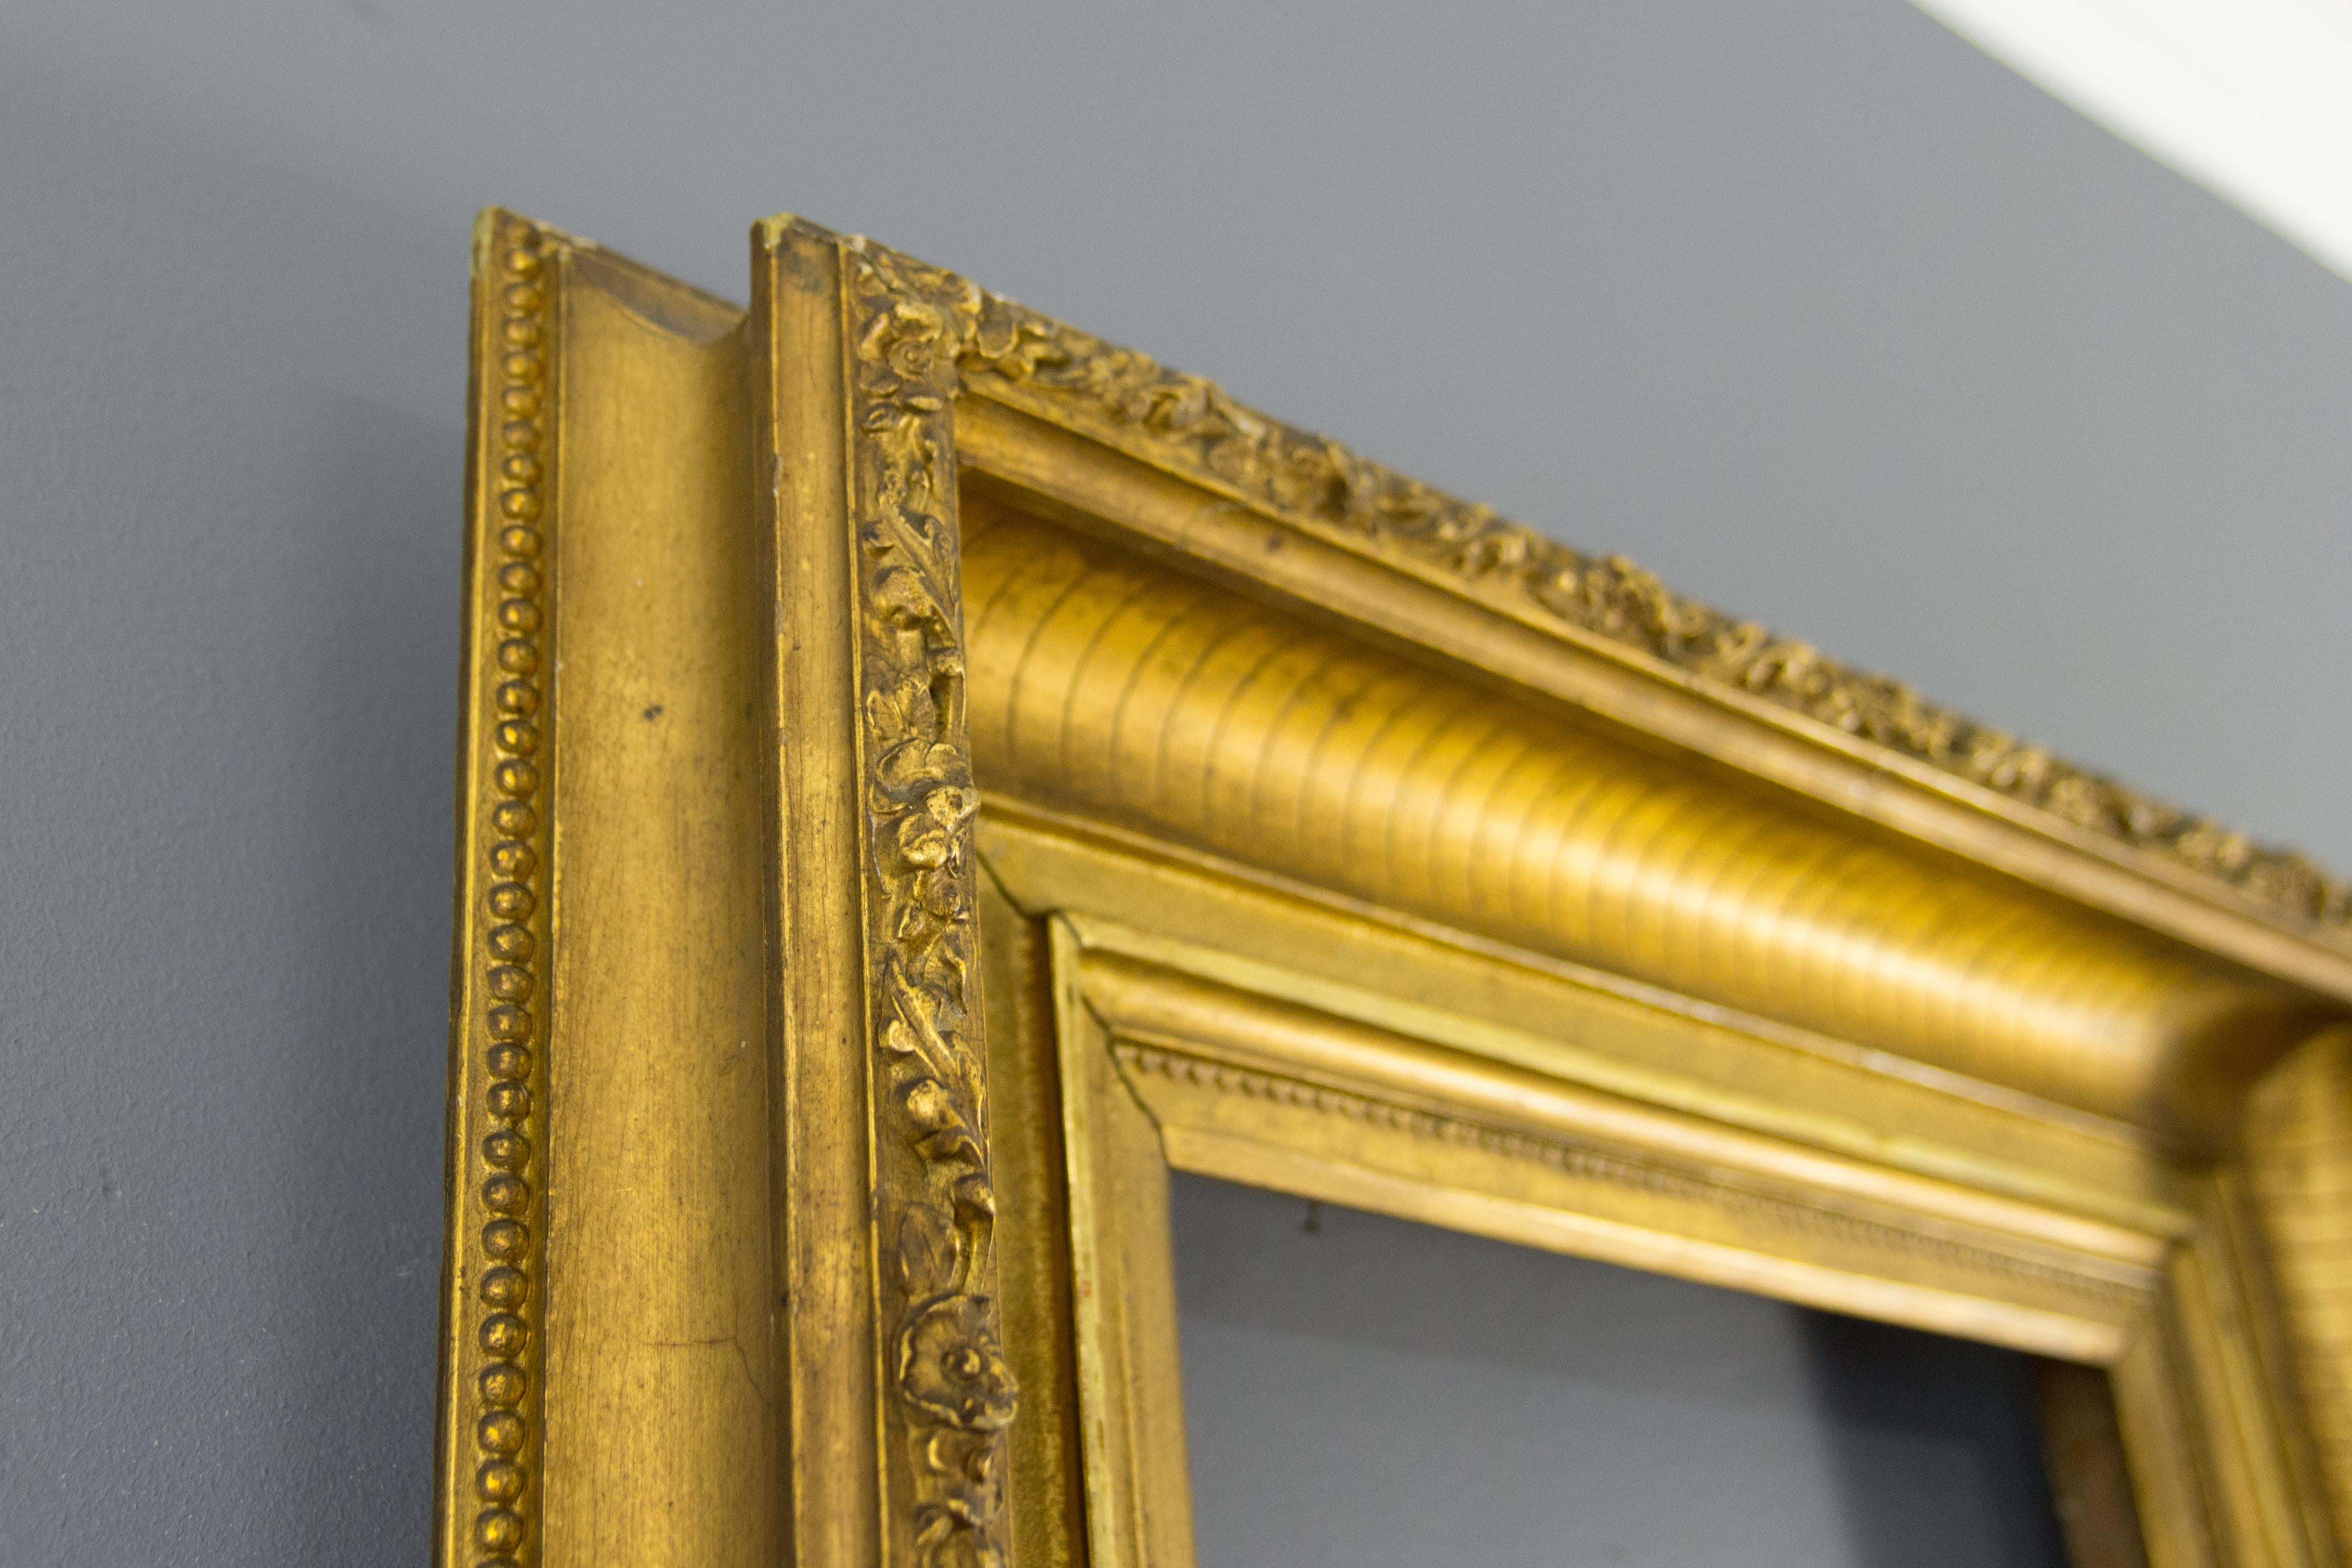 Schöner französischer Bilder- oder Spiegelrahmen aus Vergoldung und Gesso, Ende 19. Jahrhundert.
Dieser spektakuläre antike Rahmen weist einen geriffelten Rand auf, der am äußeren Rand mit Blumen und Blättern verziert ist.
Abmessungen: Höhe 54,5 cm